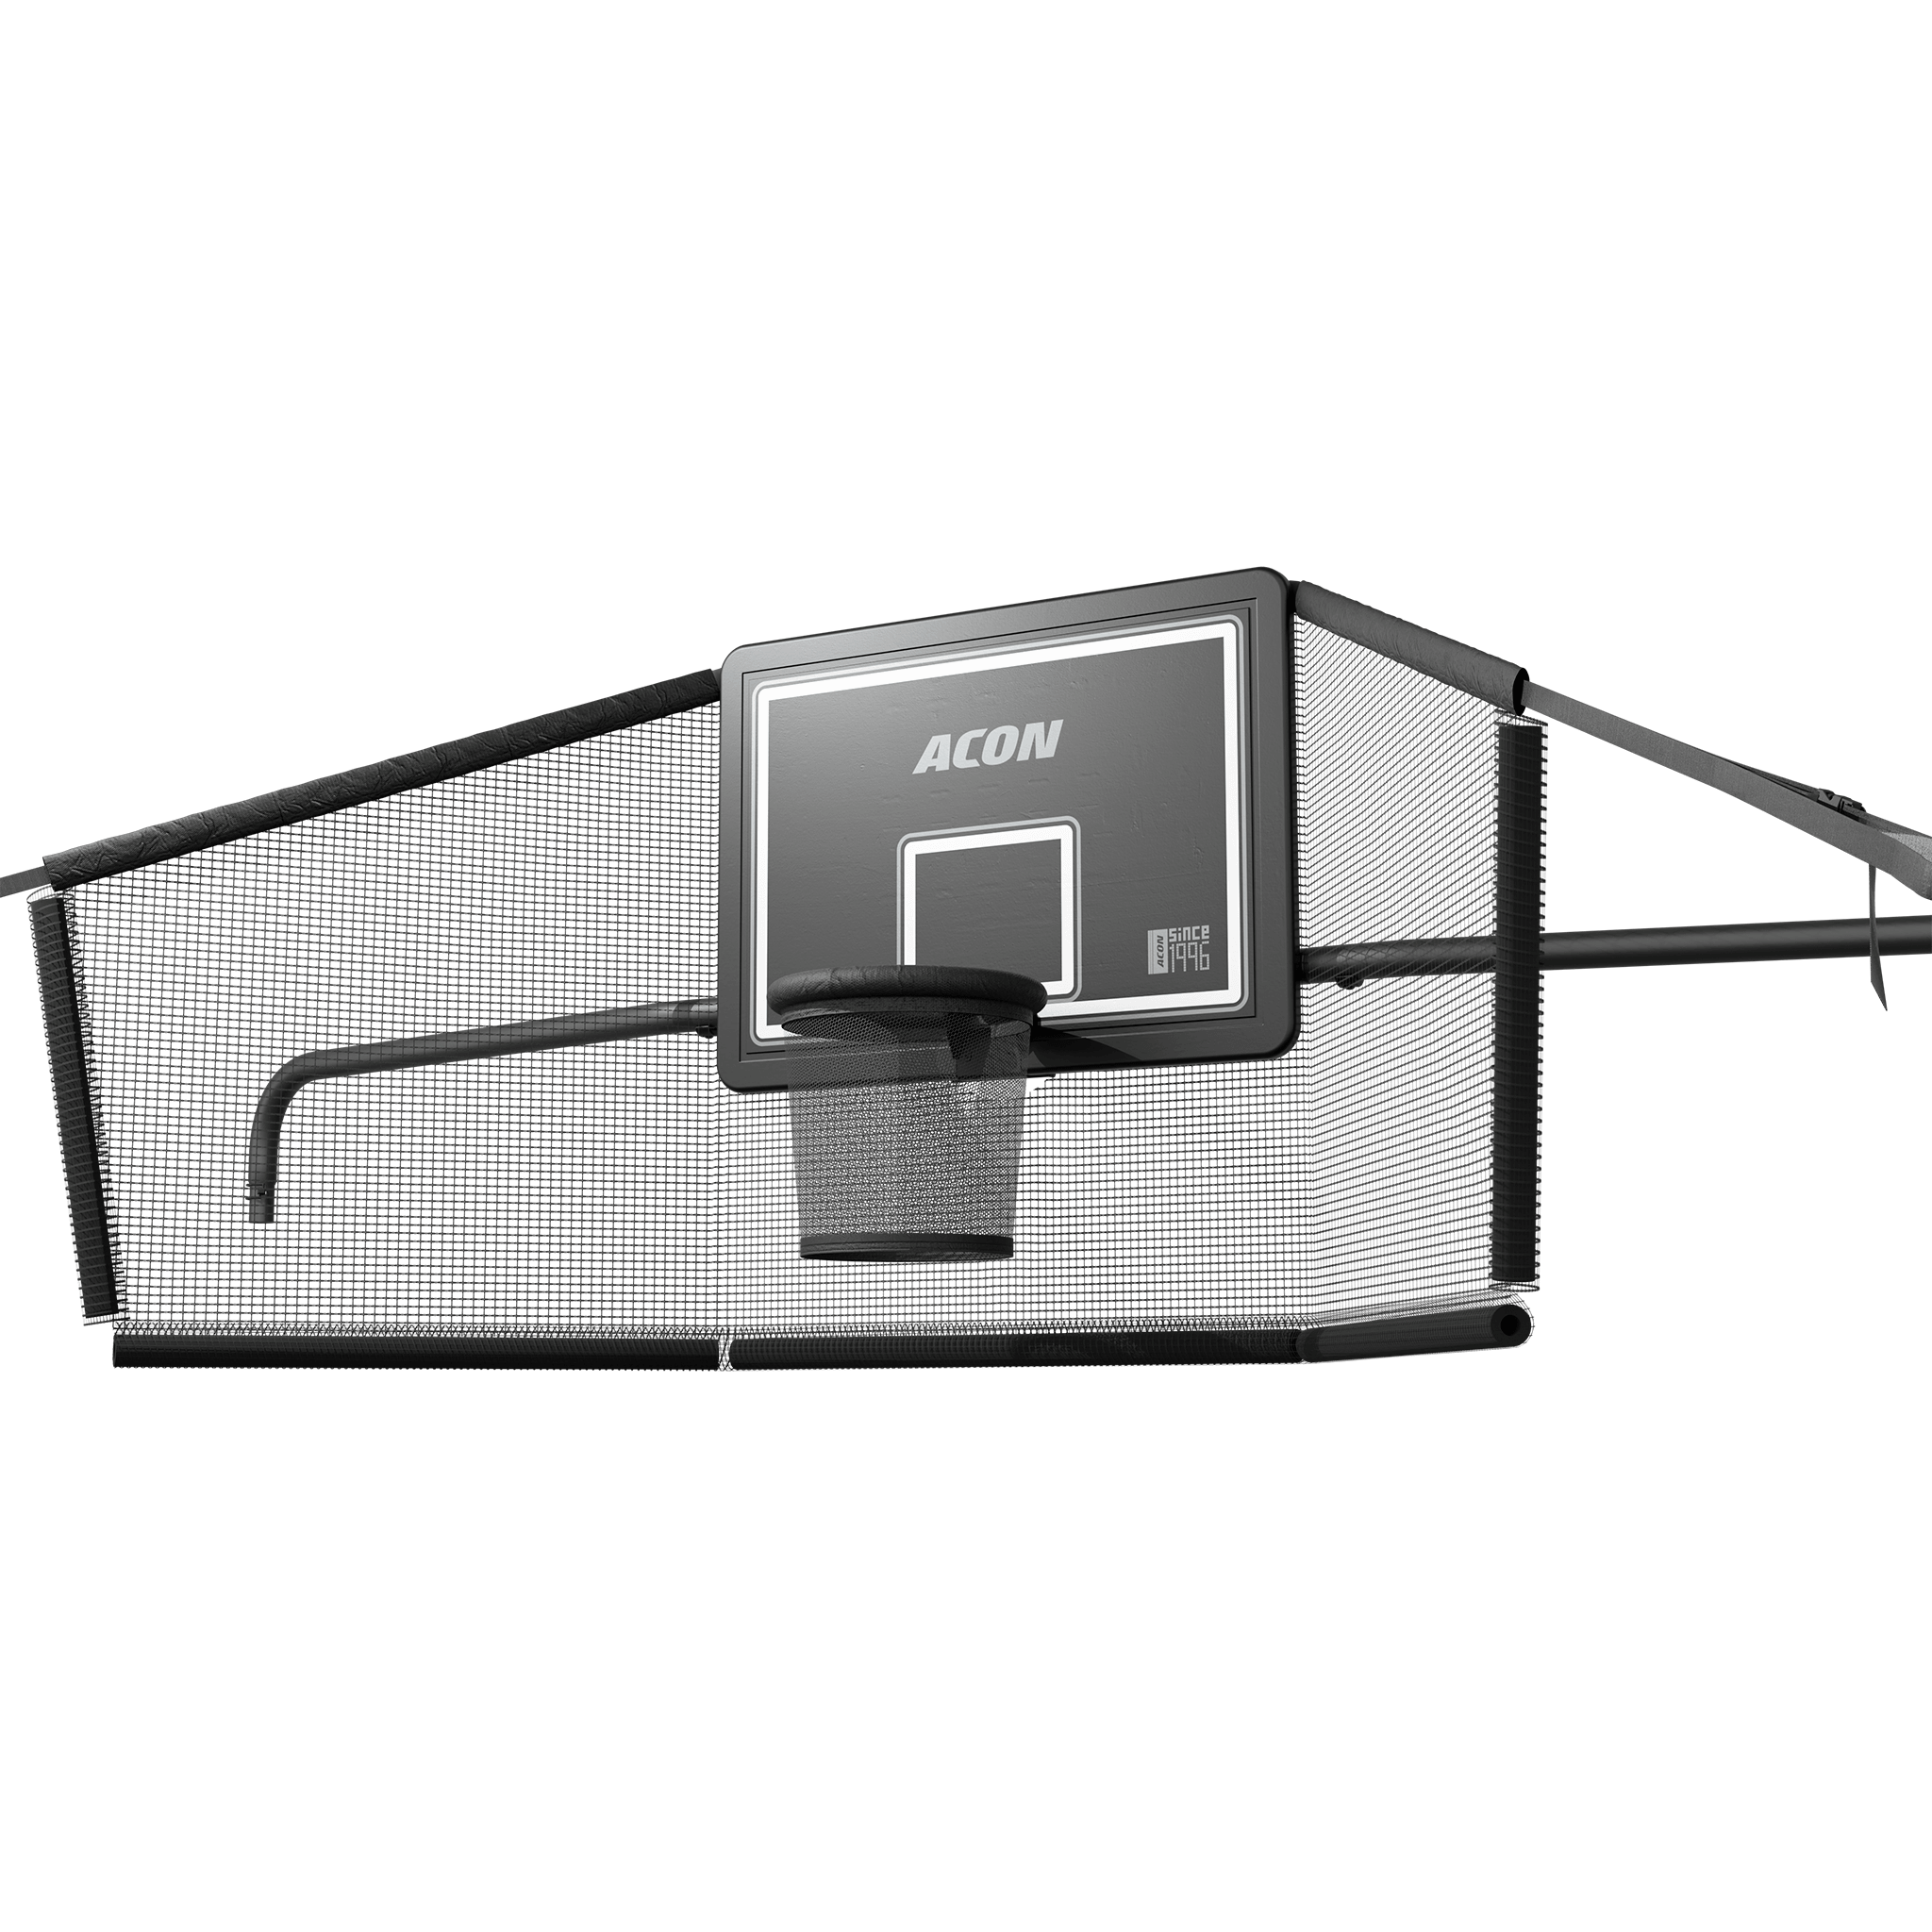 ACON X Basketballkorb mit Rückennetz für 17ft Rectangular Trampoline.